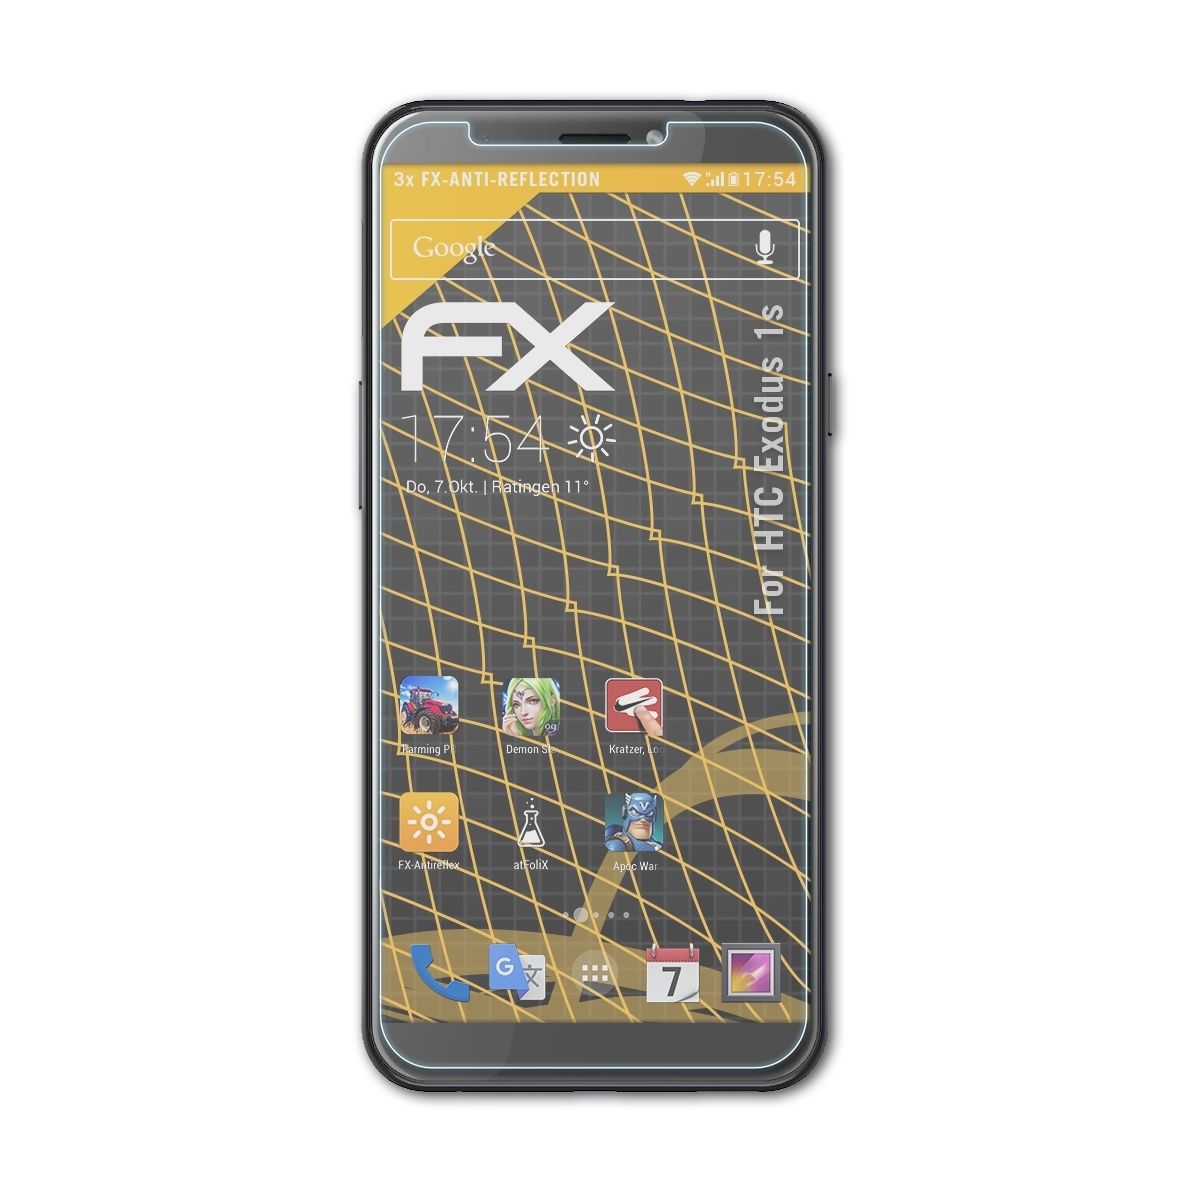 Displayschutz(für 3x FX-Antireflex HTC Exodus 1s) ATFOLIX